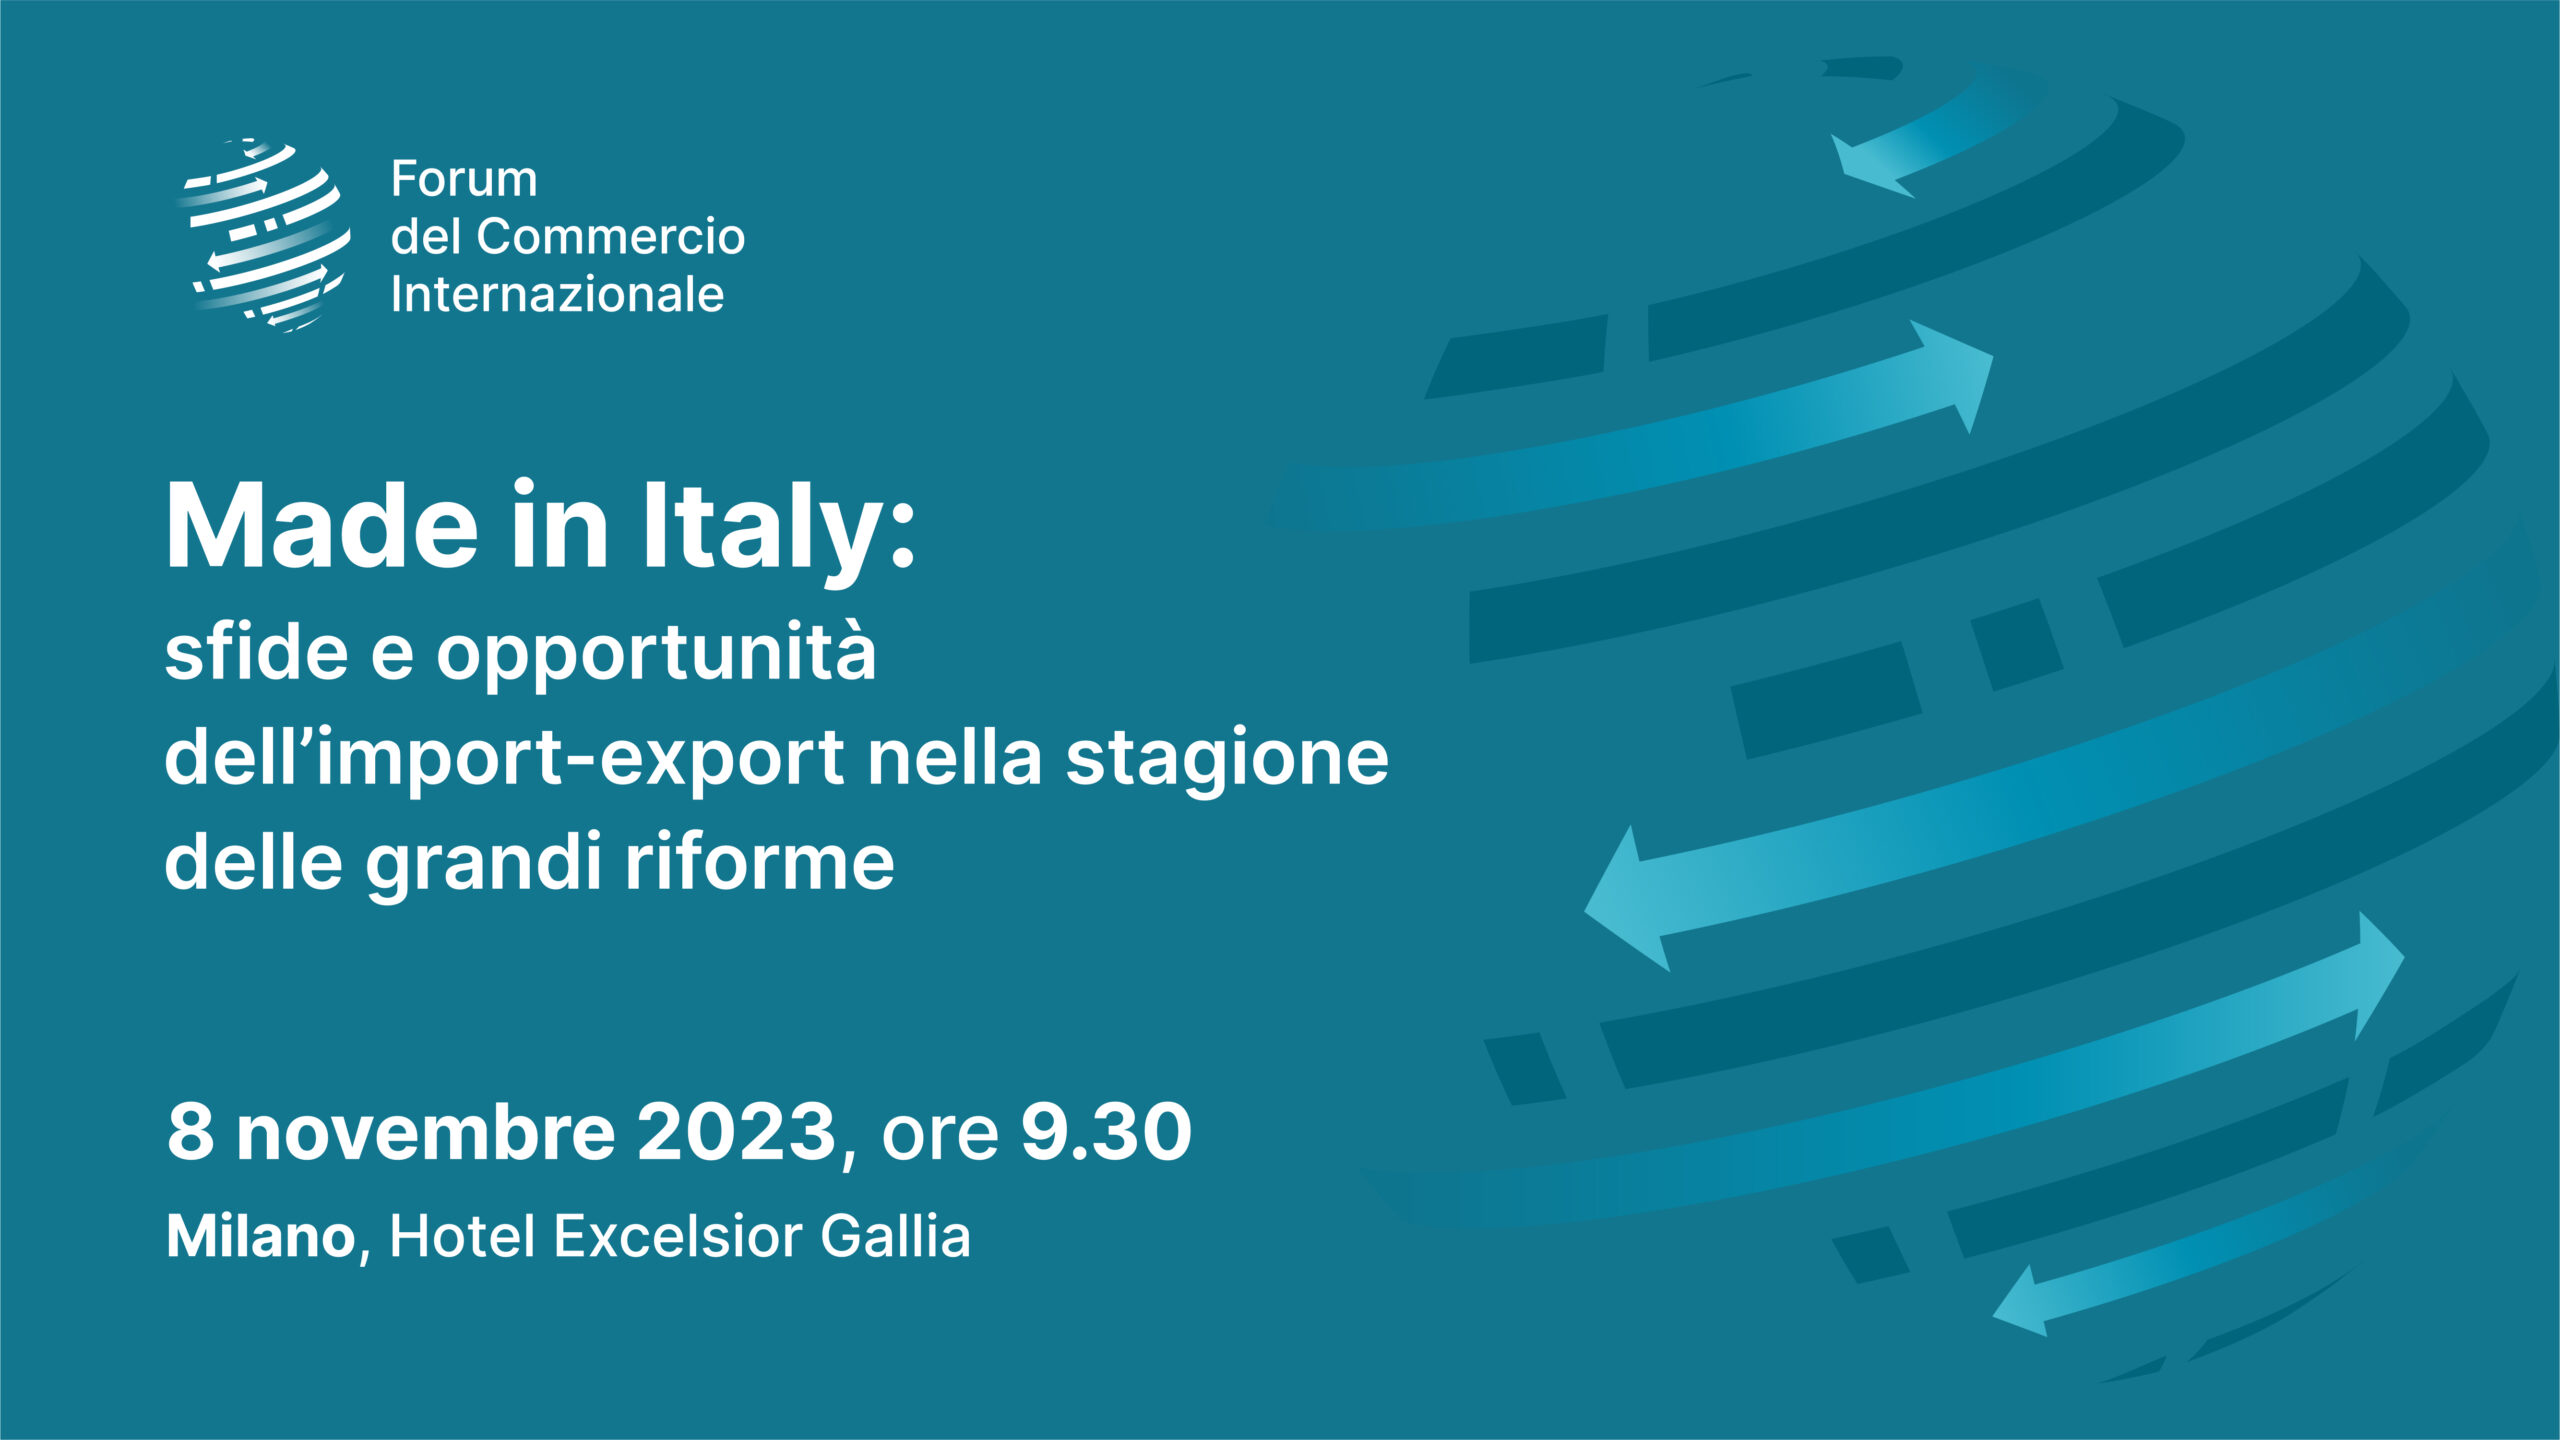 Forum del Commercio Internazionale in Italia